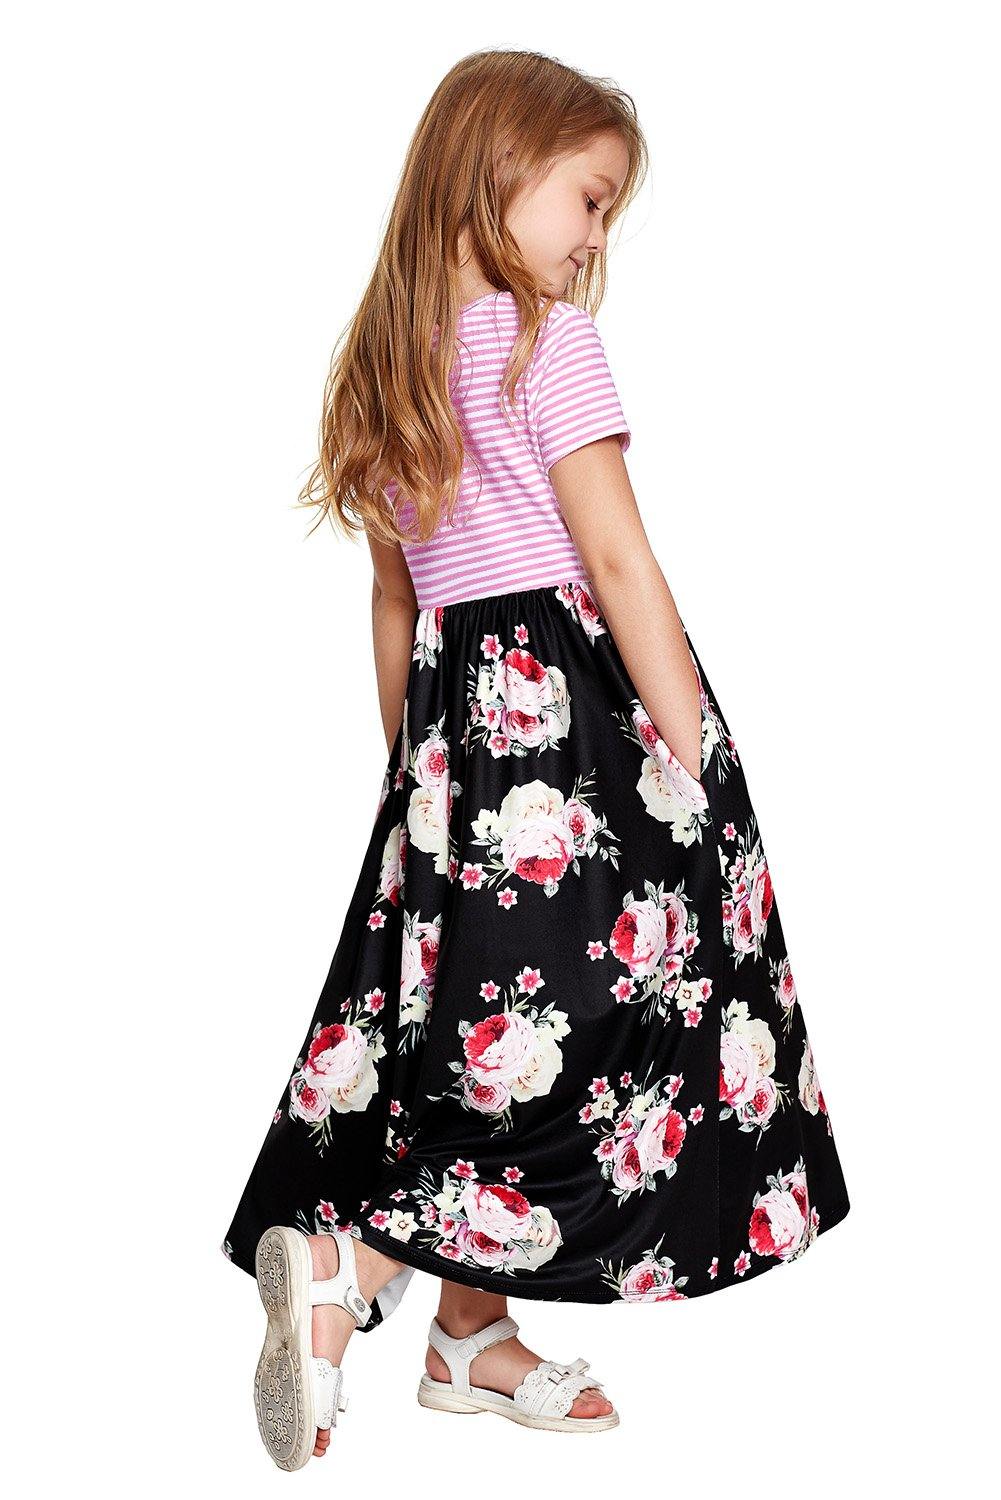 Striped Floral Print Little Girls Maxi Dress - L & M Kee, LLC